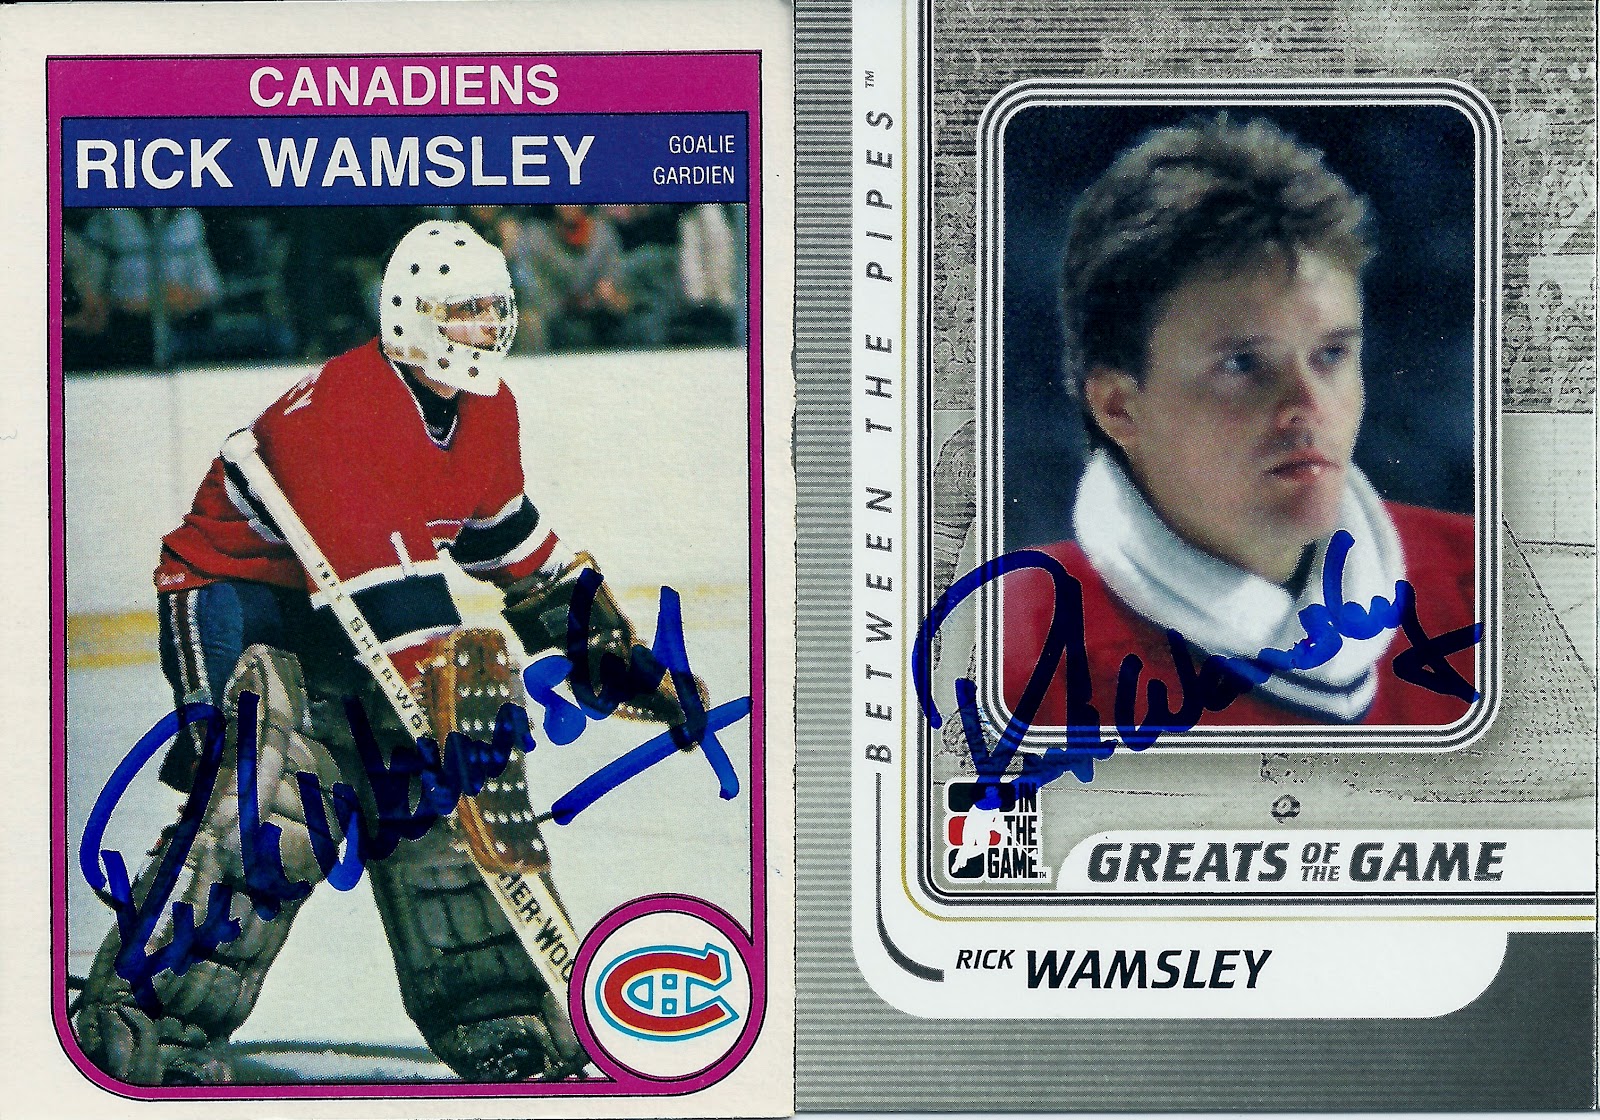  1982-83 O-Pee-Chee Hockey #51 Lanny McDonald Calgary